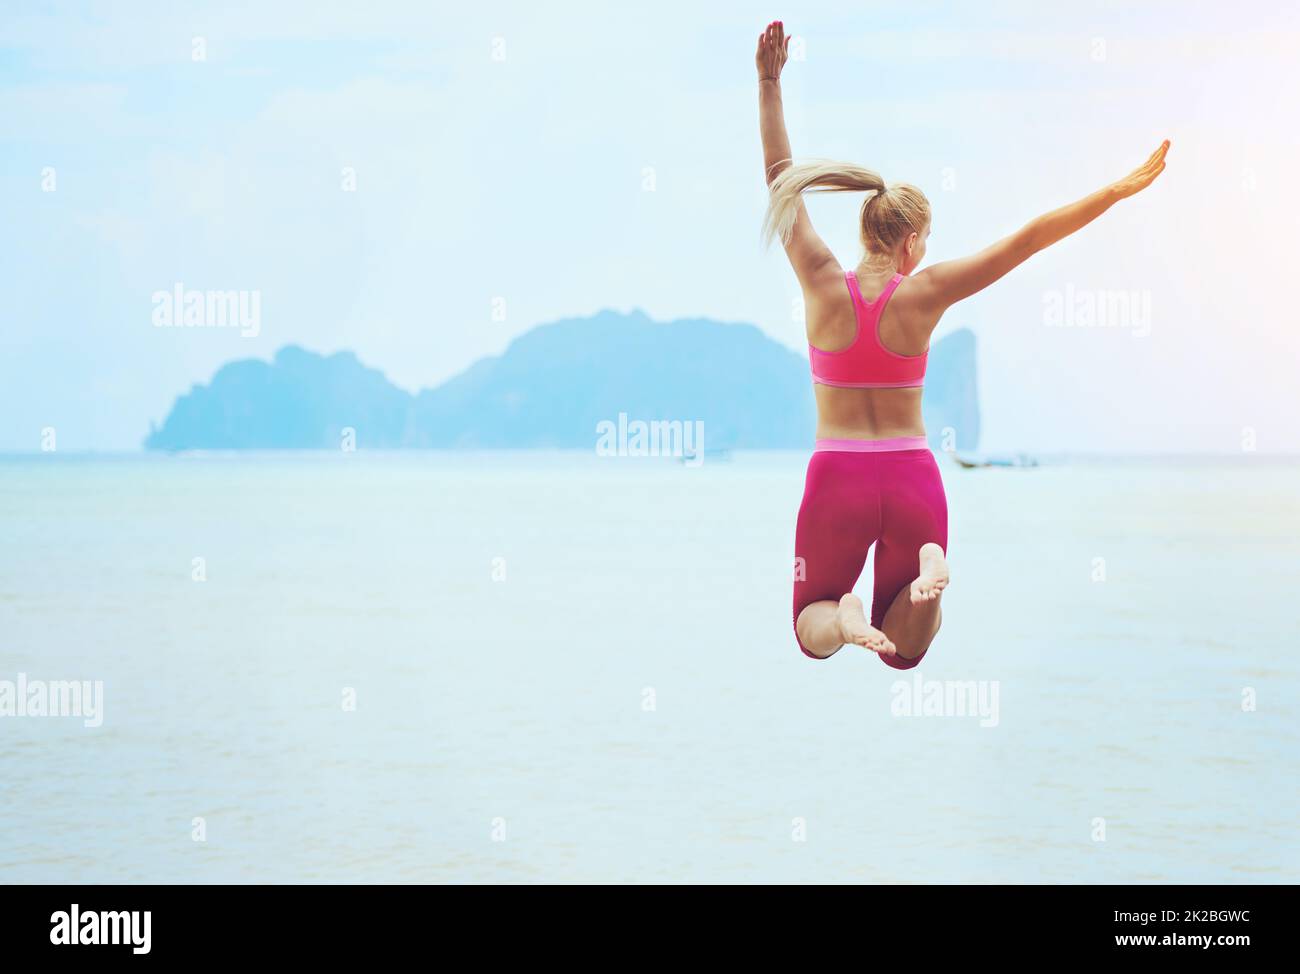 Fühlen Sie sich fit und fabelhaft. Rückansicht einer sportlichen jungen Frau, die an einem tropischen Strand in die Luft springt. Stockfoto